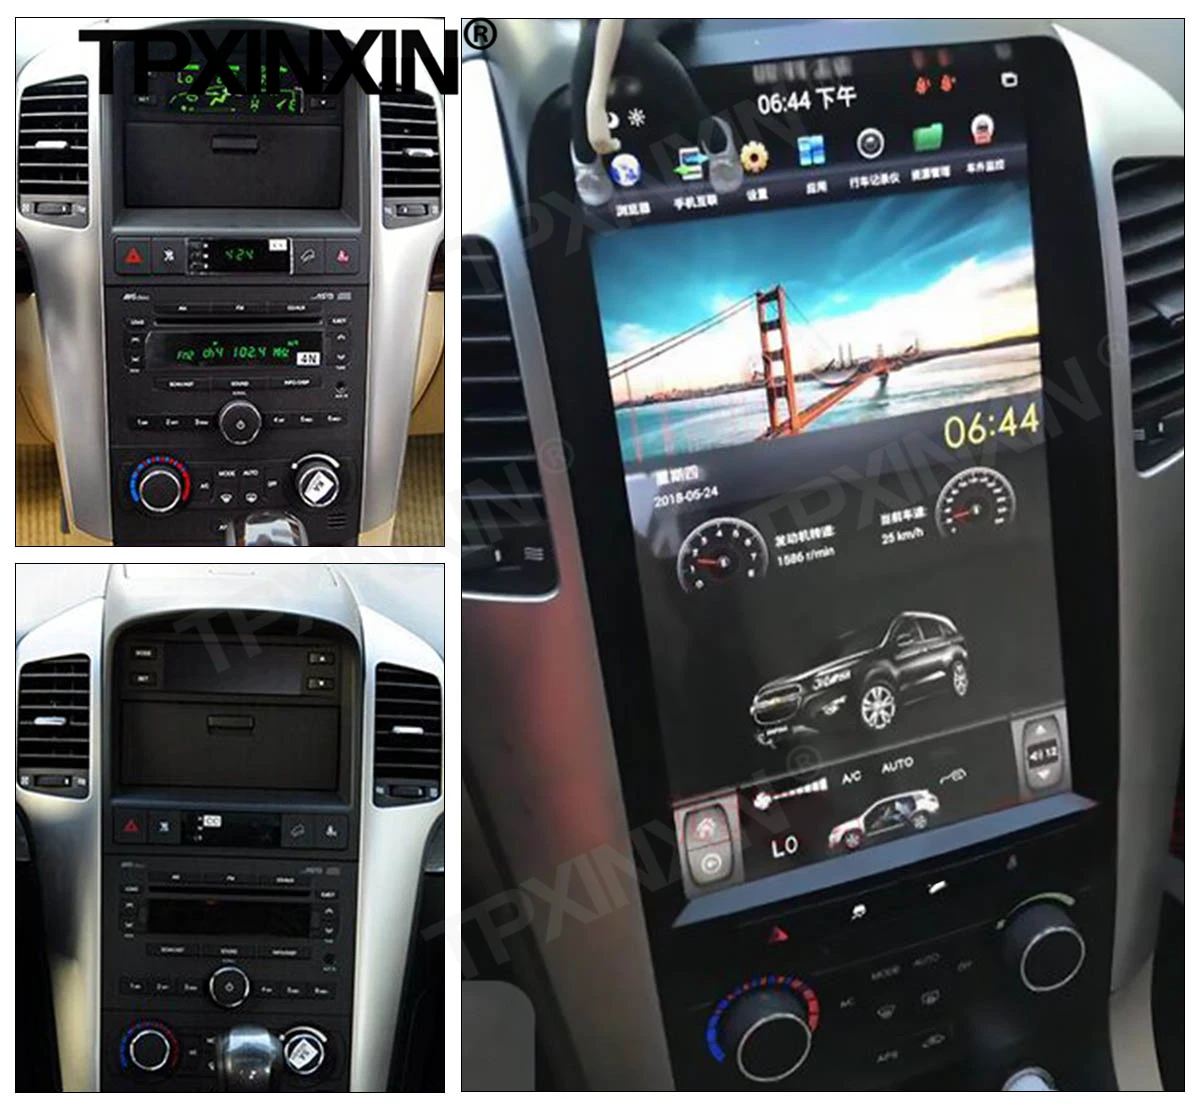 Tesla Ekrano Carplay Android Automobilio Radijo 2 Din Stereo Imtuvas Chevrolet Captiva 2008 m. 2009 m. 2010 m. 2011 m. 2012 m GPS Garso Blokas